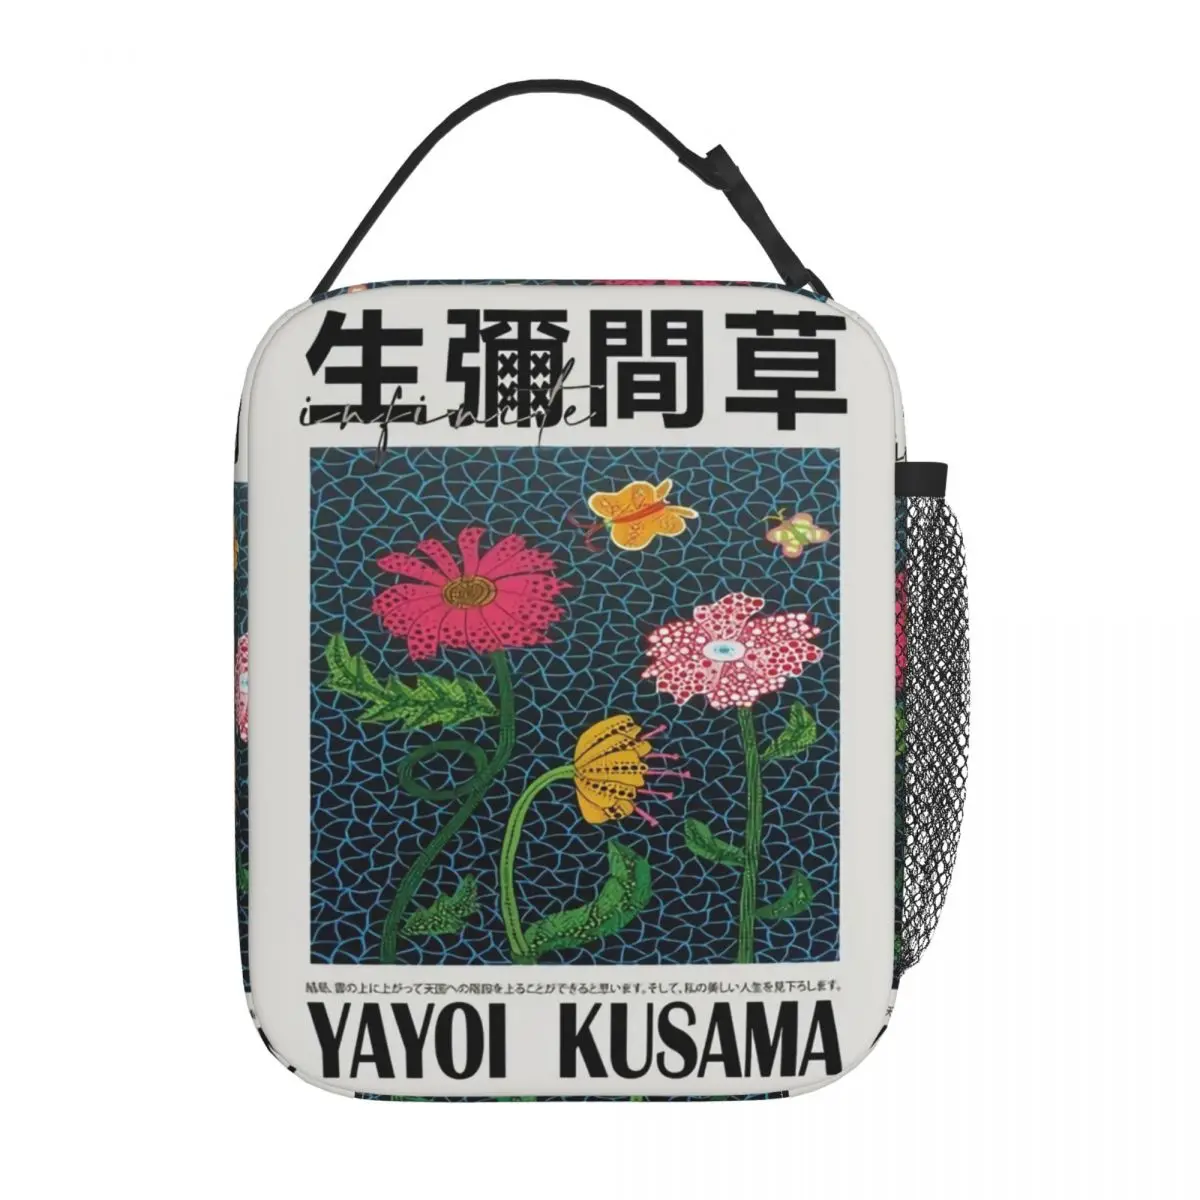 Yayoi Kusama Термоизолированная сумка для ланча в японском стиле в стиле поп-арт Pianic Портативный контейнер для ланча Кулер Термальный ланч-бокс Изображение 0 